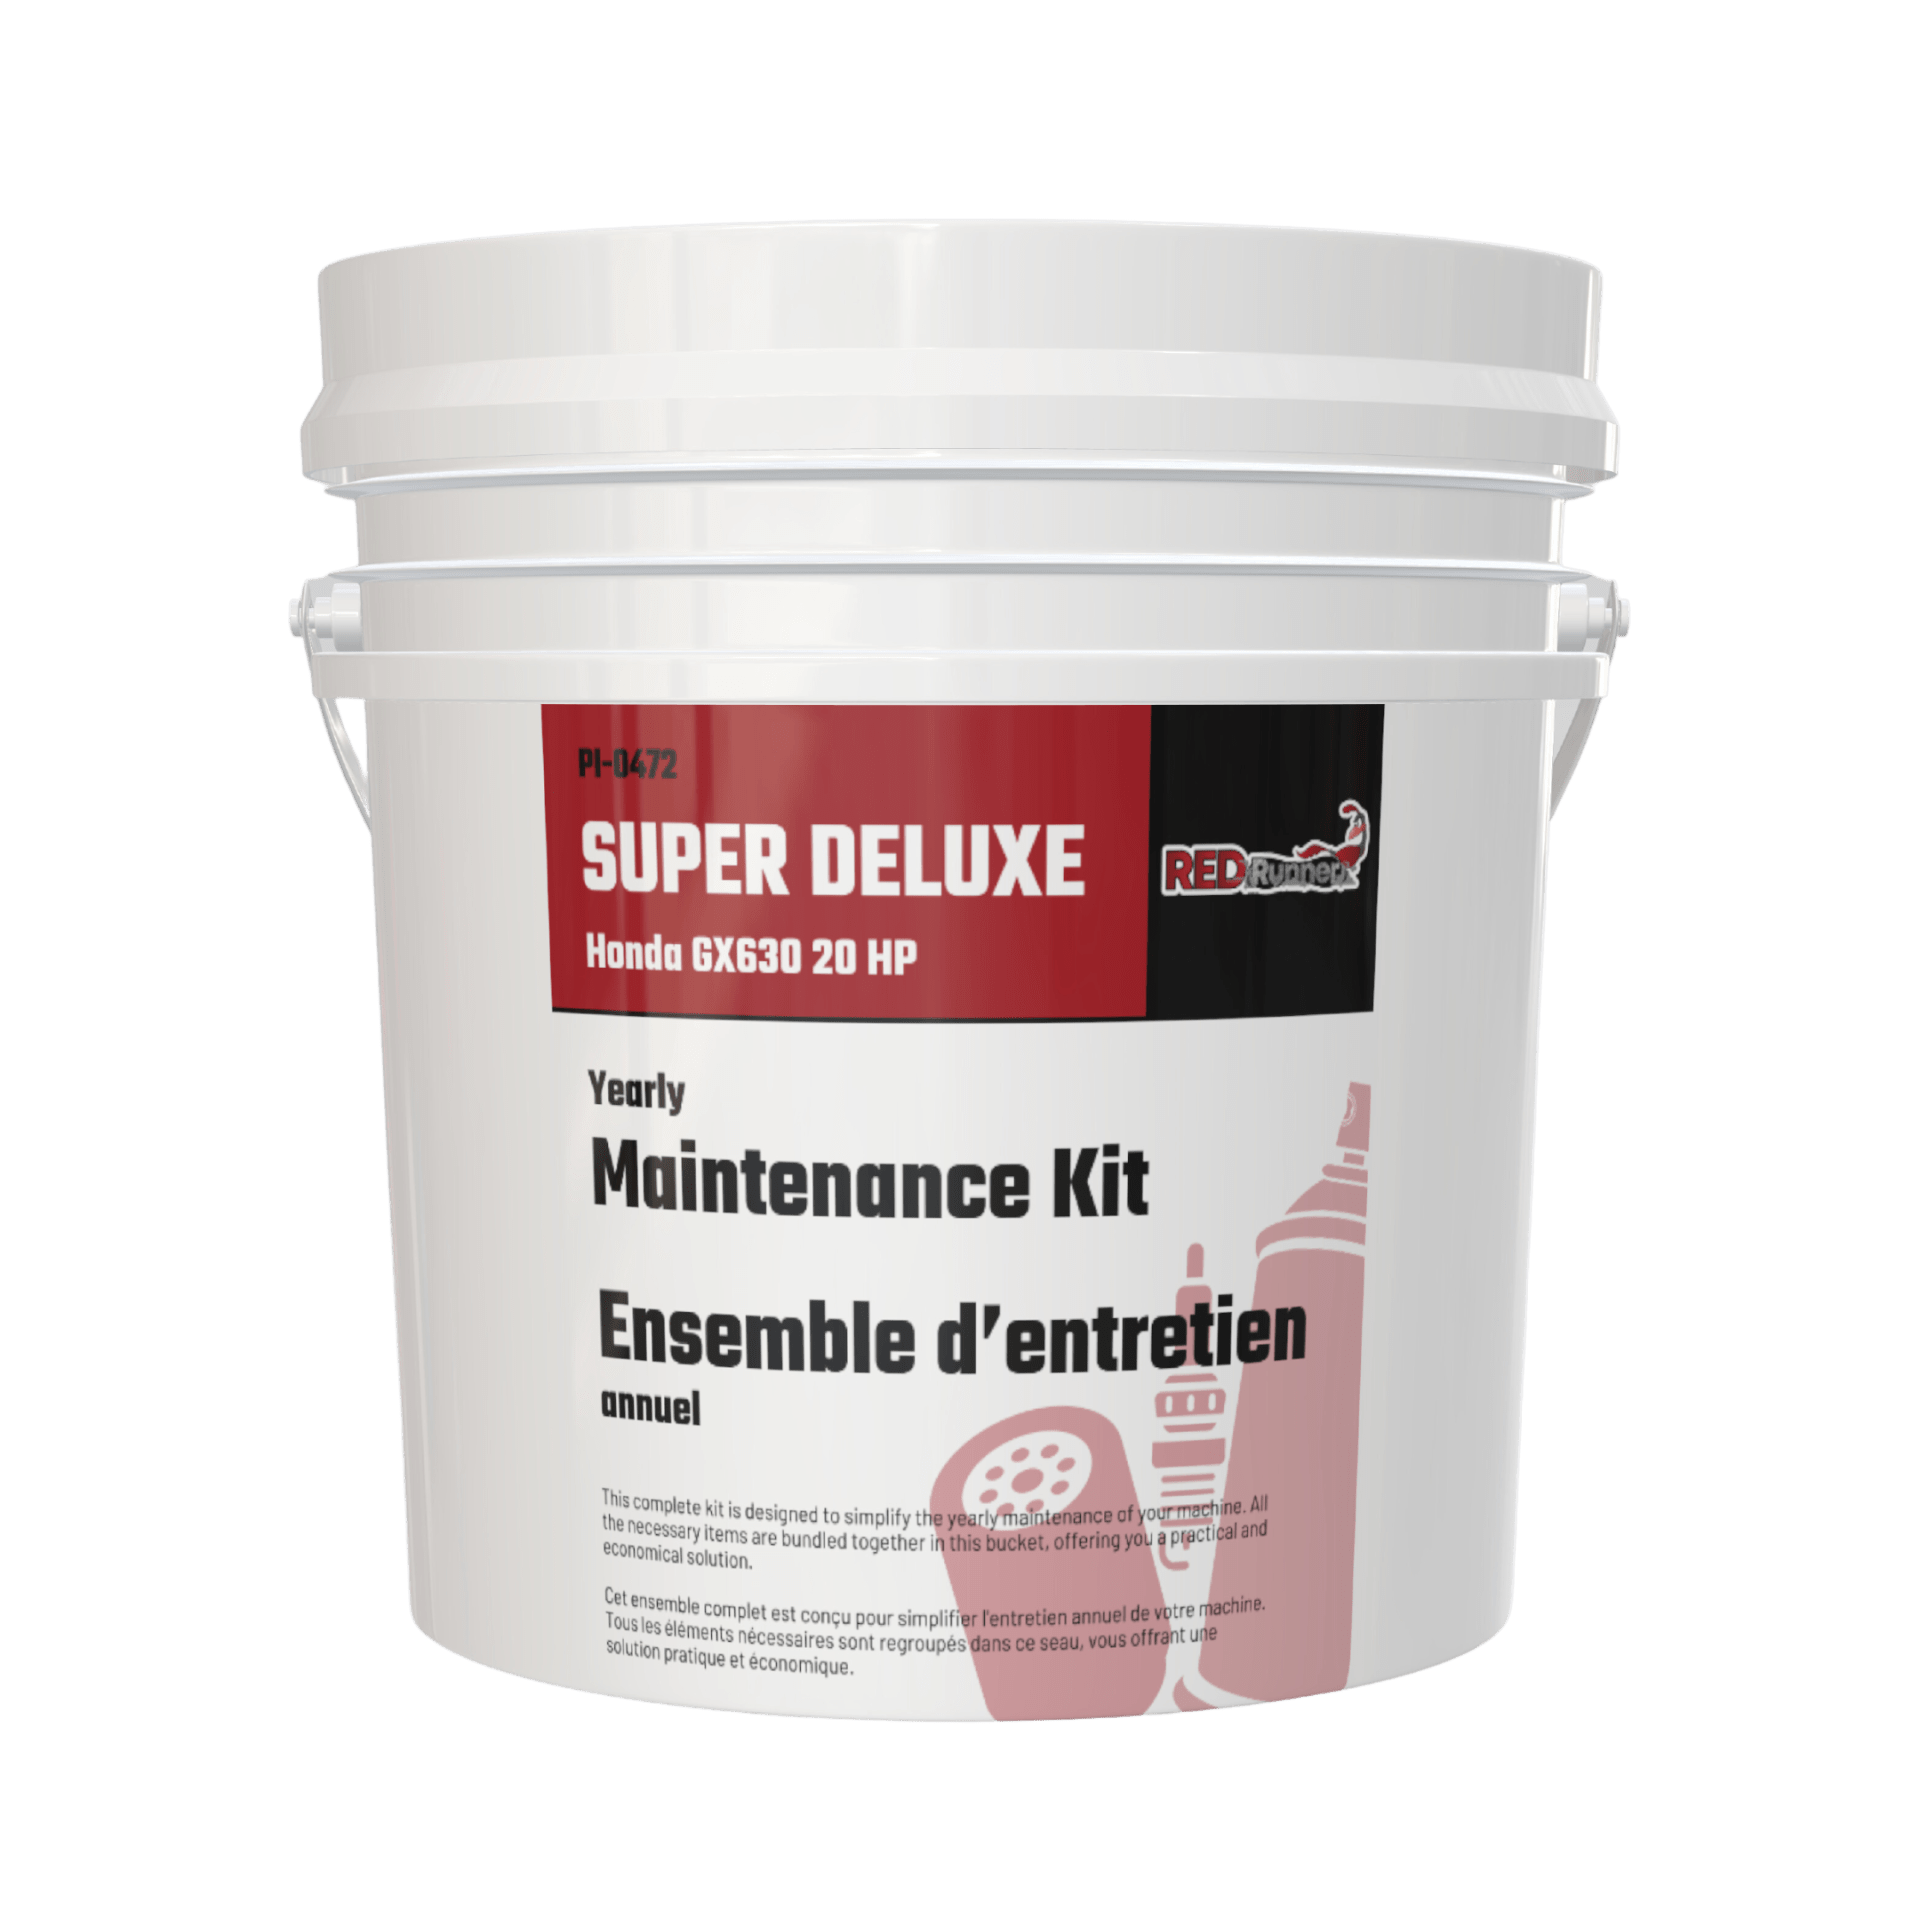 Maintenance Kit for Red Runner Super Deluxe